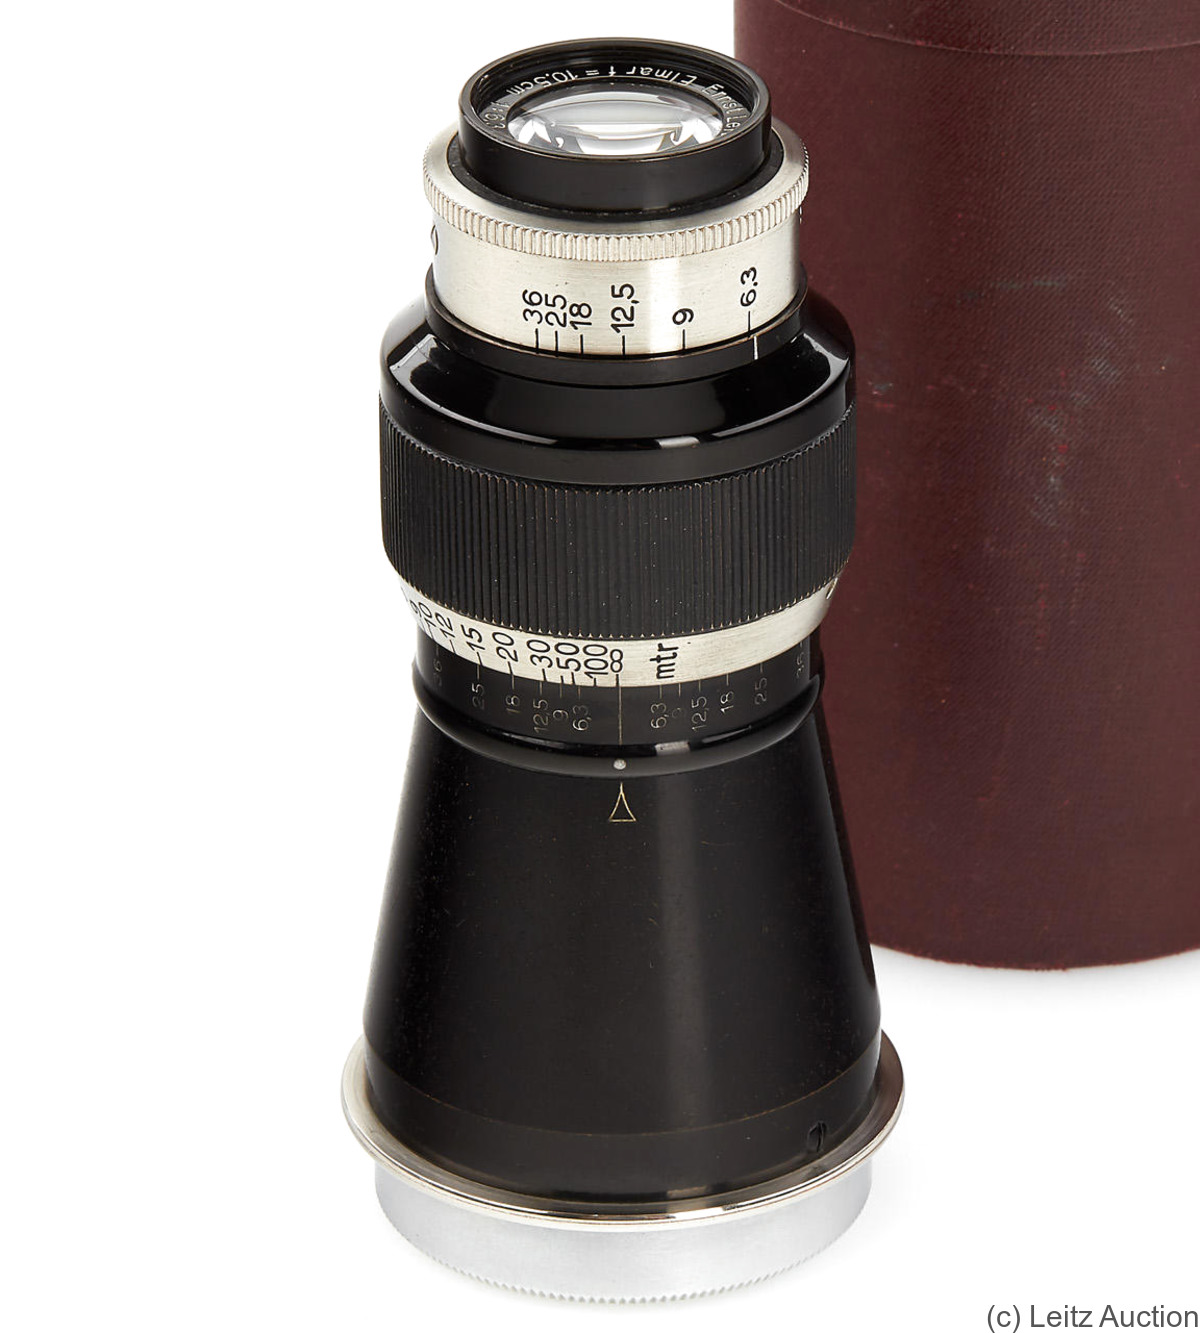 Leitz: 105mm (10.5cm) f6.3 Elmar (SM, black/nickel) camera